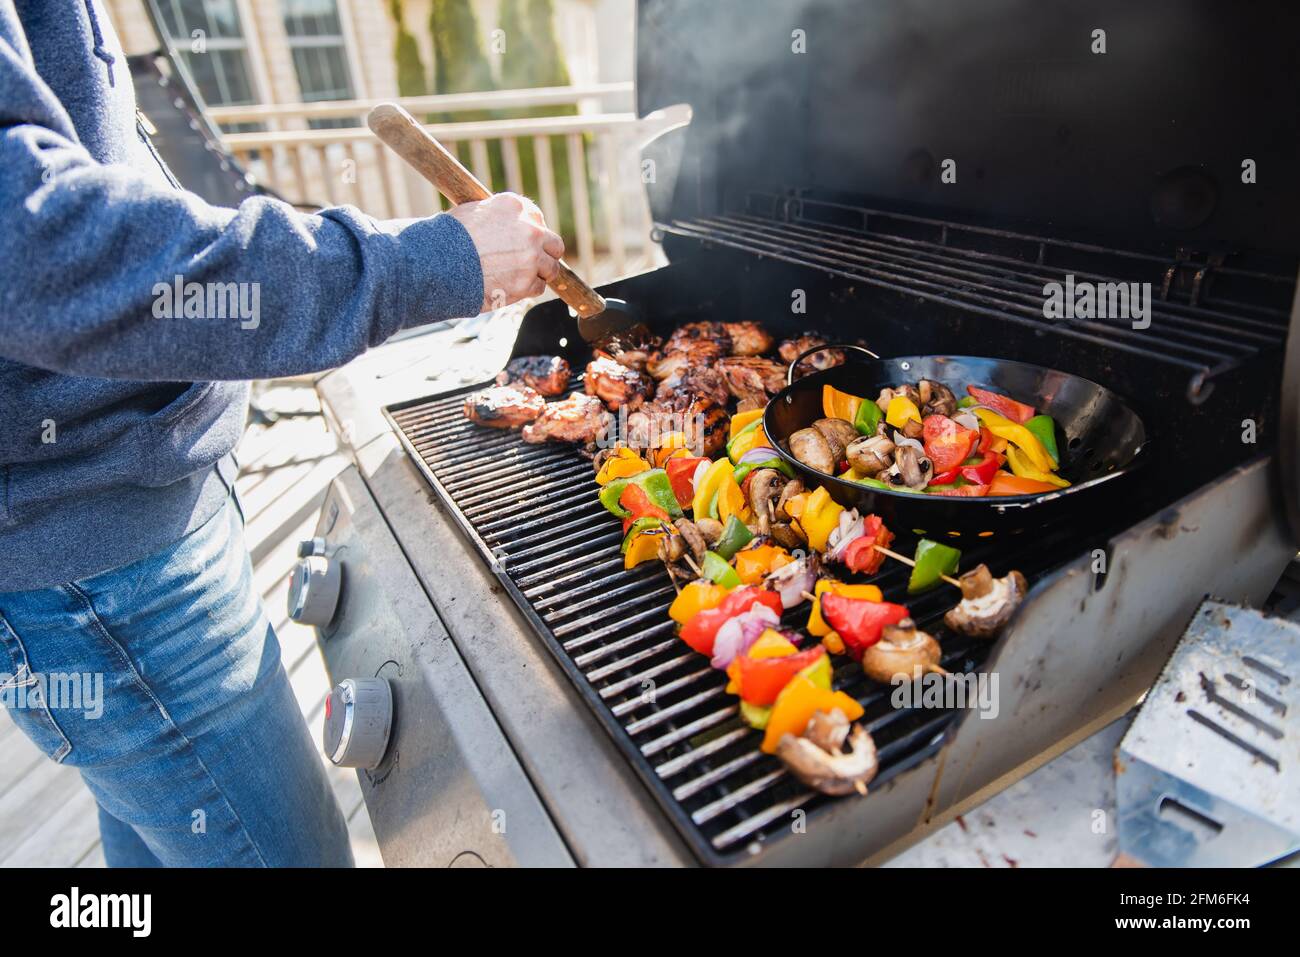 Mann grillen Huhn und Gemüse im Freien auf einem Gas-bbq-Grill  Stockfotografie - Alamy